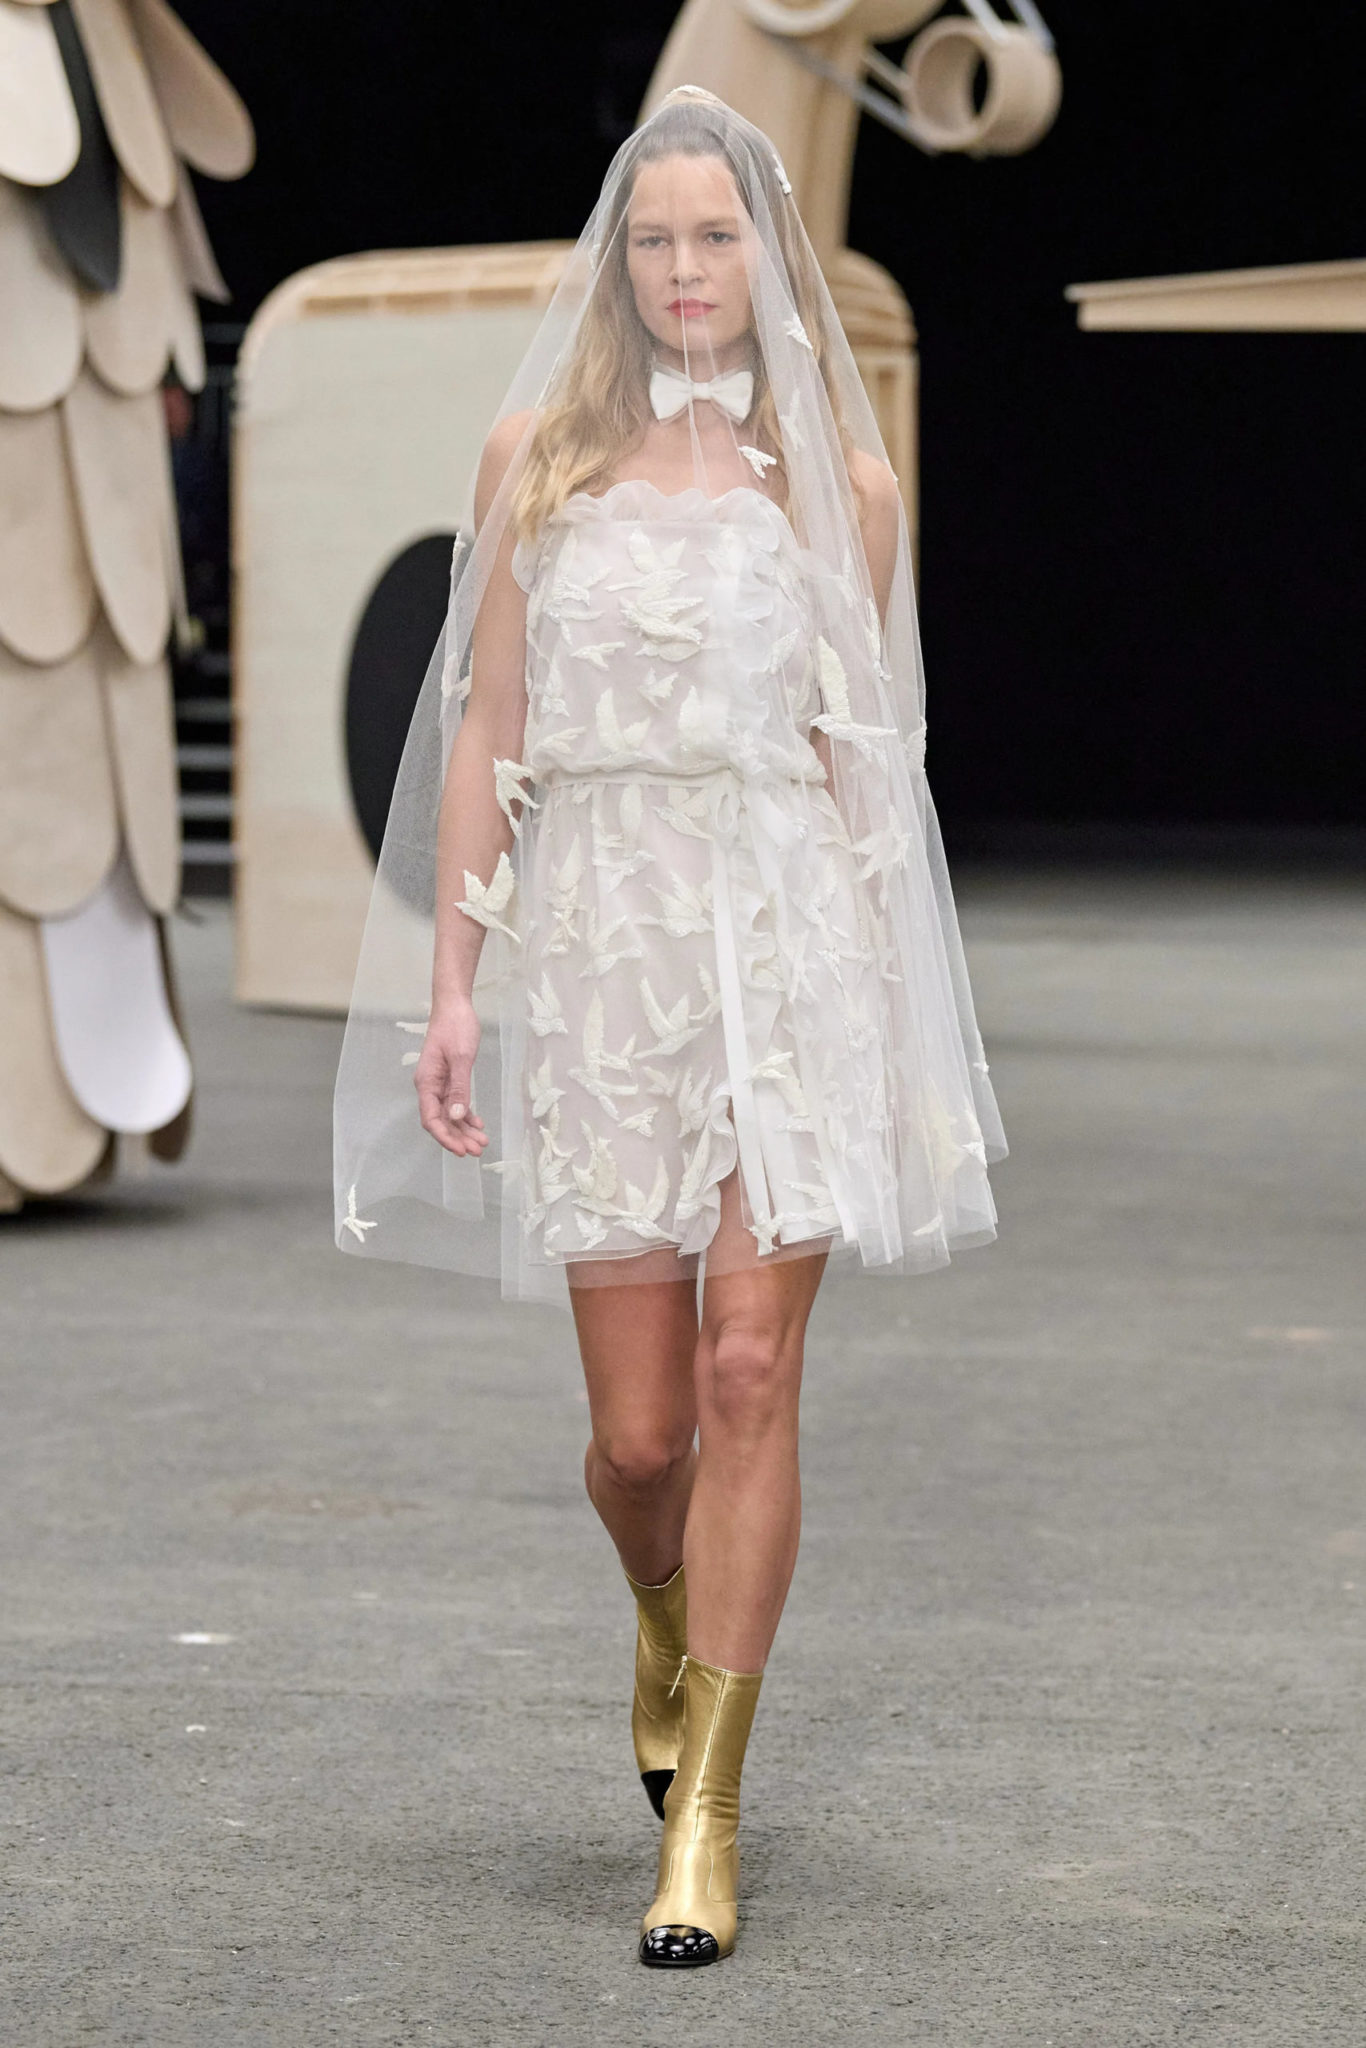 Chanel Sparks 2023 Bridal Dress Trend